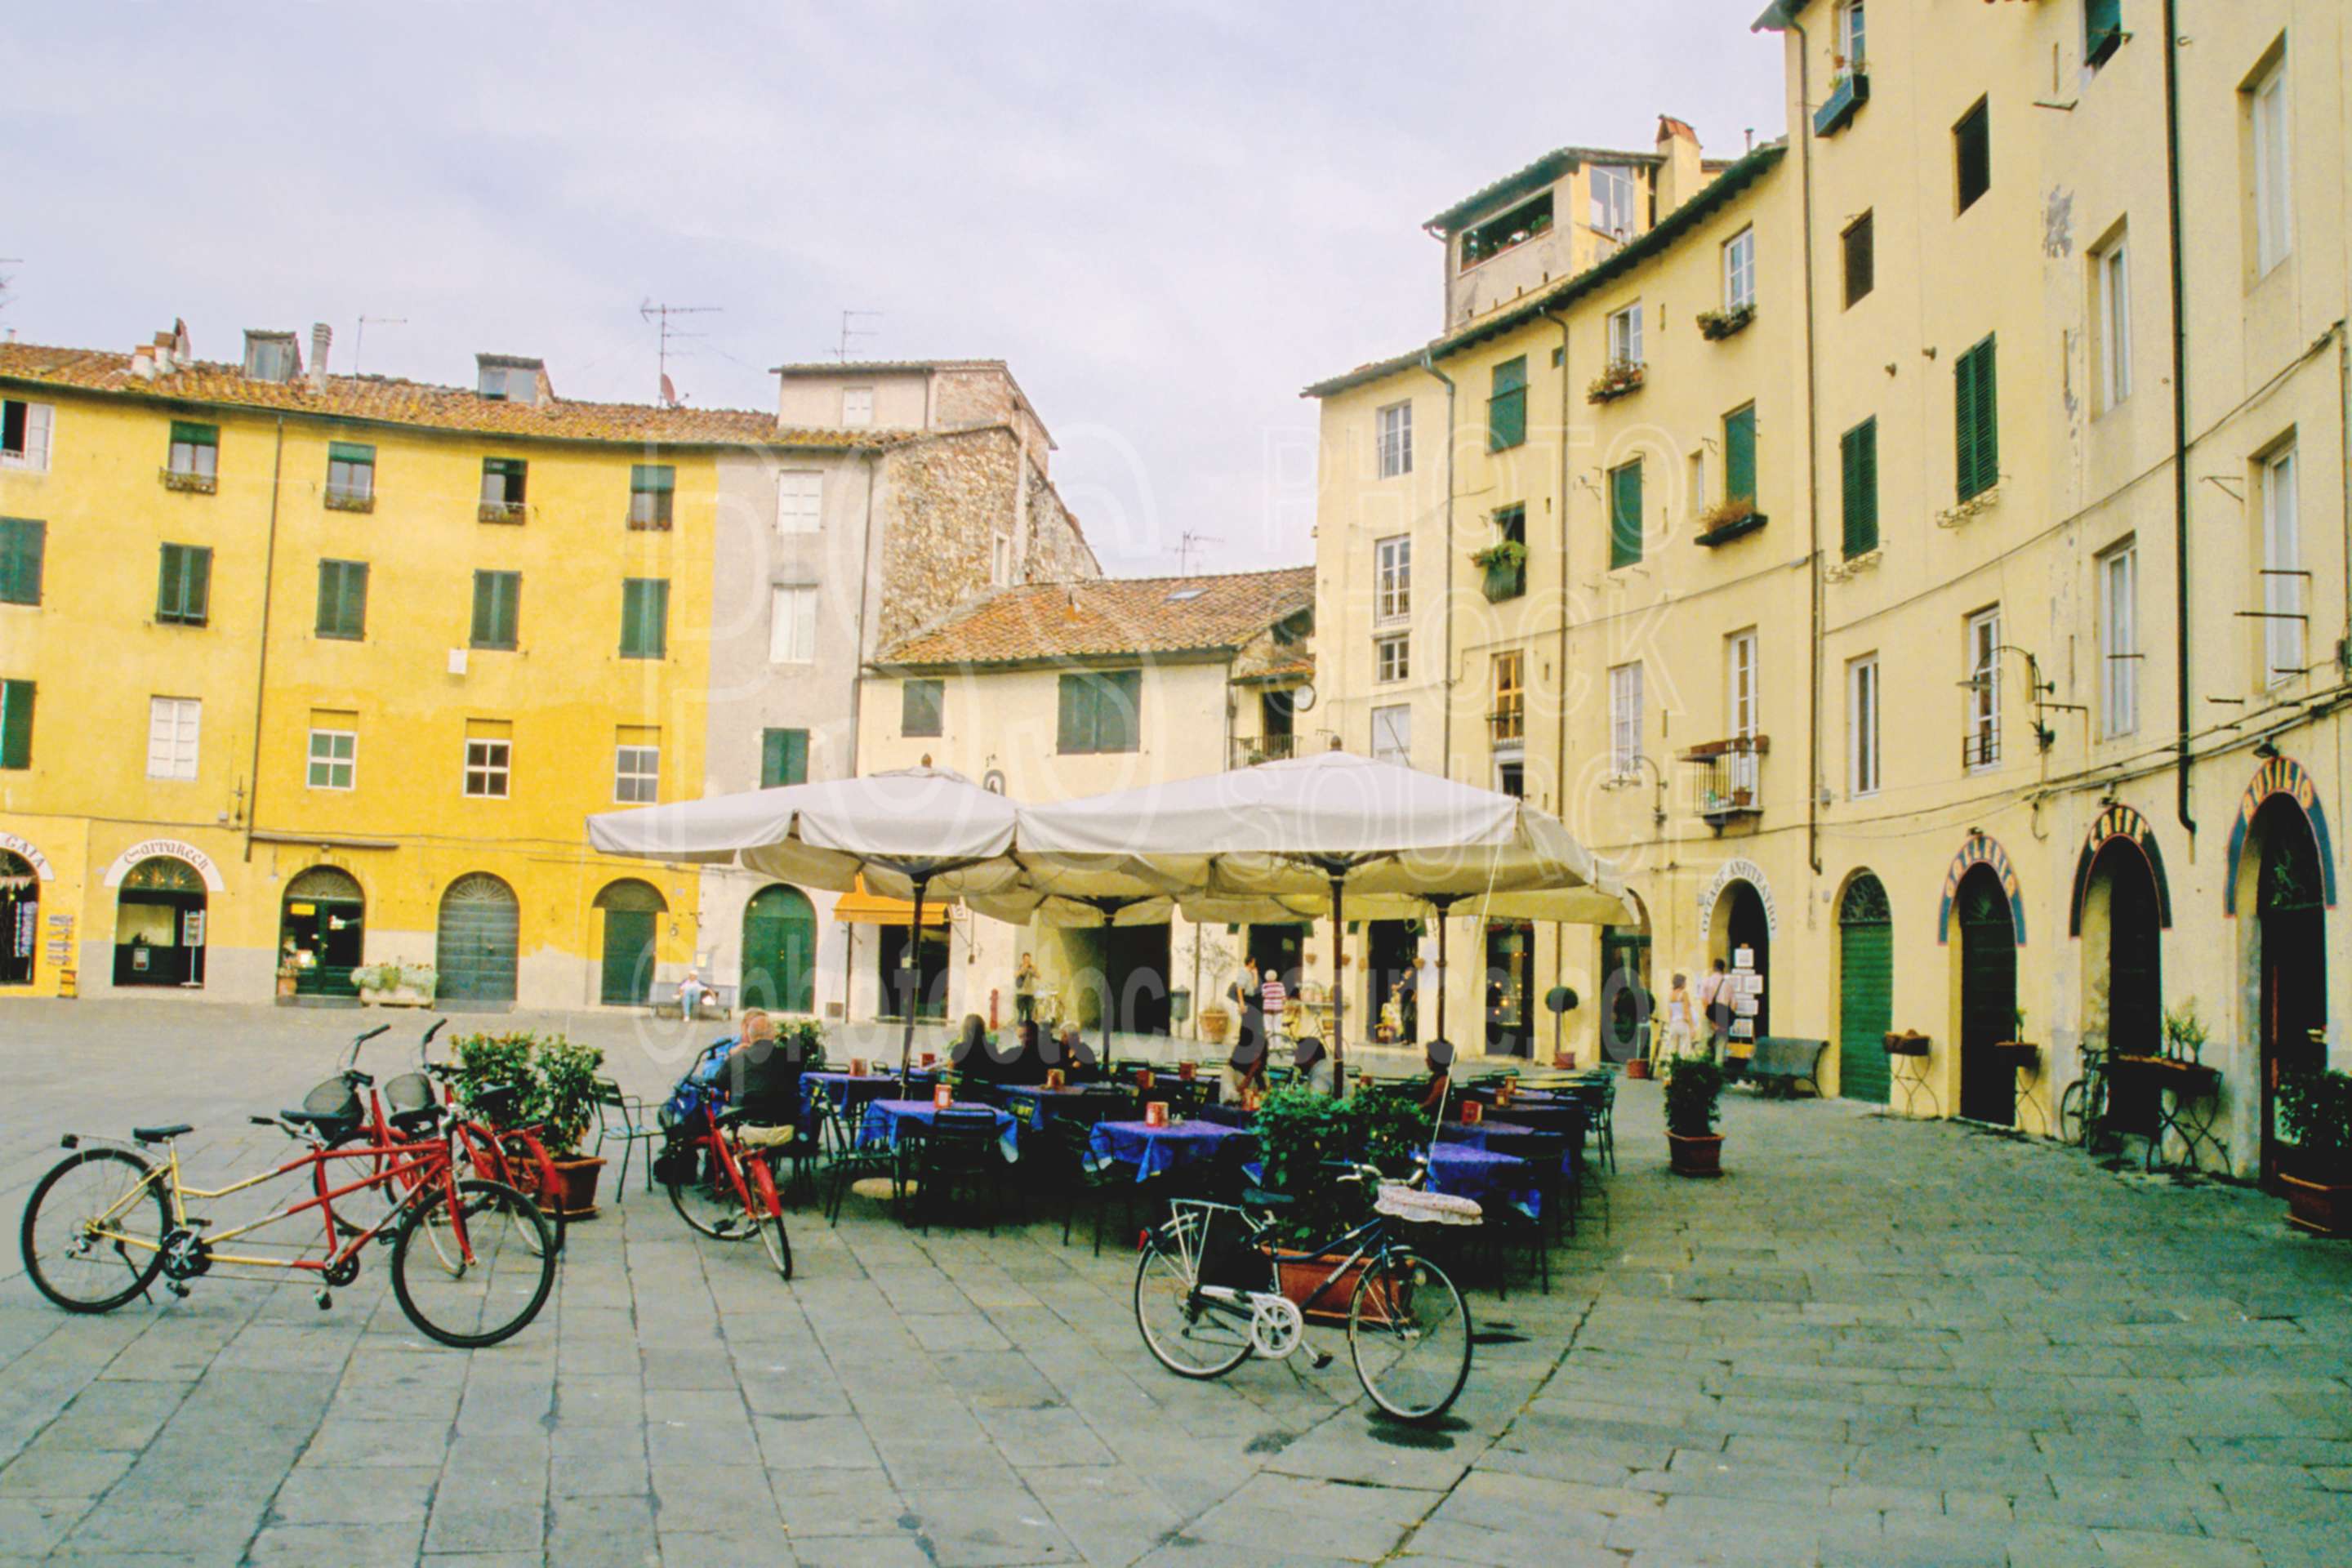 Piazza Anfiteatro,europe,plaza,square